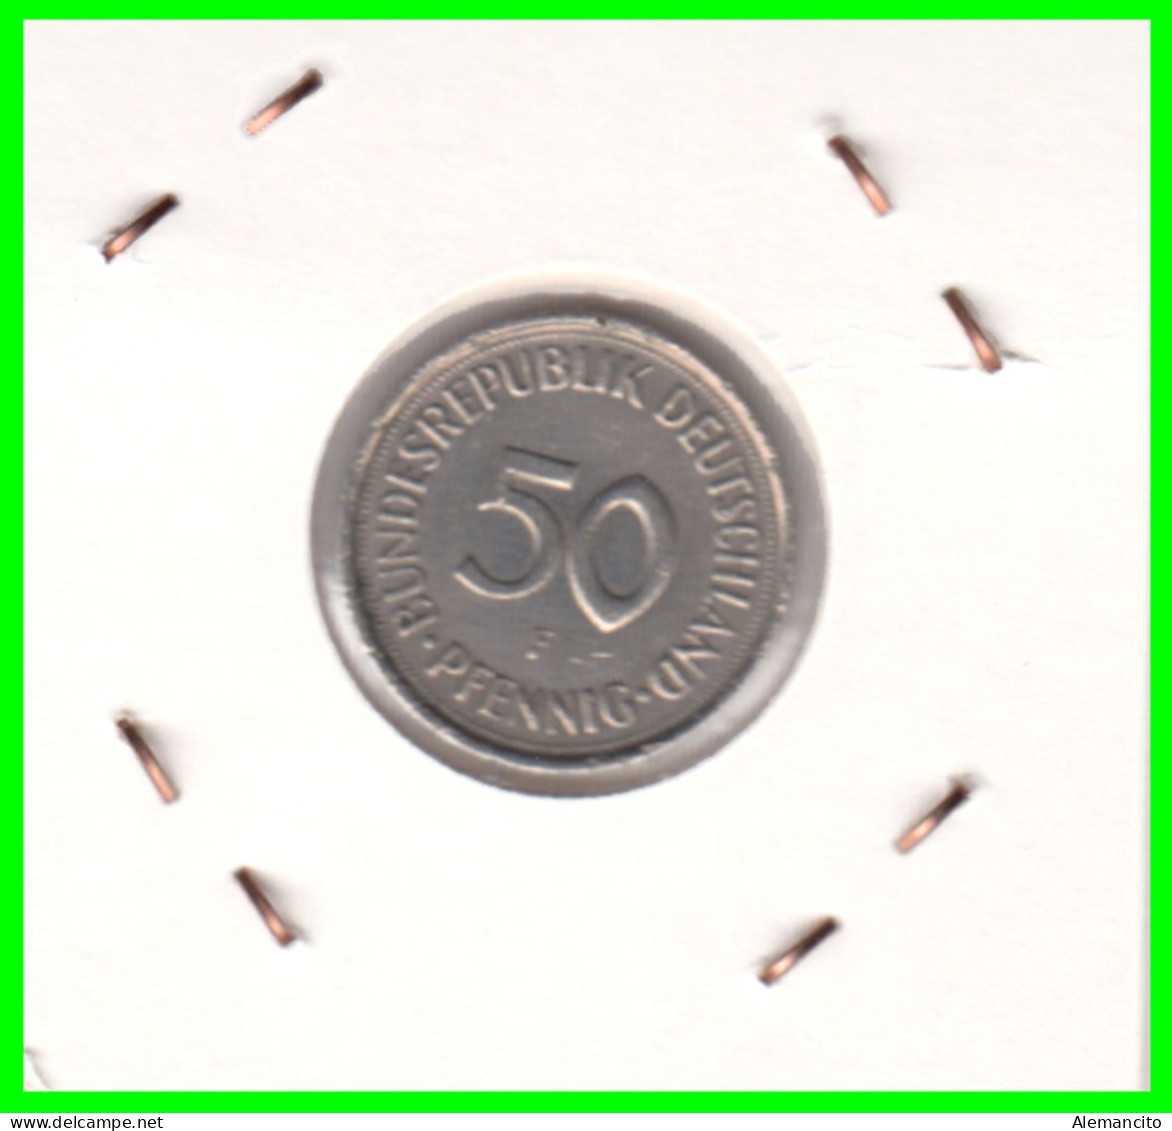 ALEMANIA - DEUTSCHLAND - GERMANY-MONEDA DE LA REPUBLICA FEDERAL DE ALEMIANIA DE 50 Pfn .DEL AÑO 1989 CECA - F -STUTTGART - 50 Pfennig